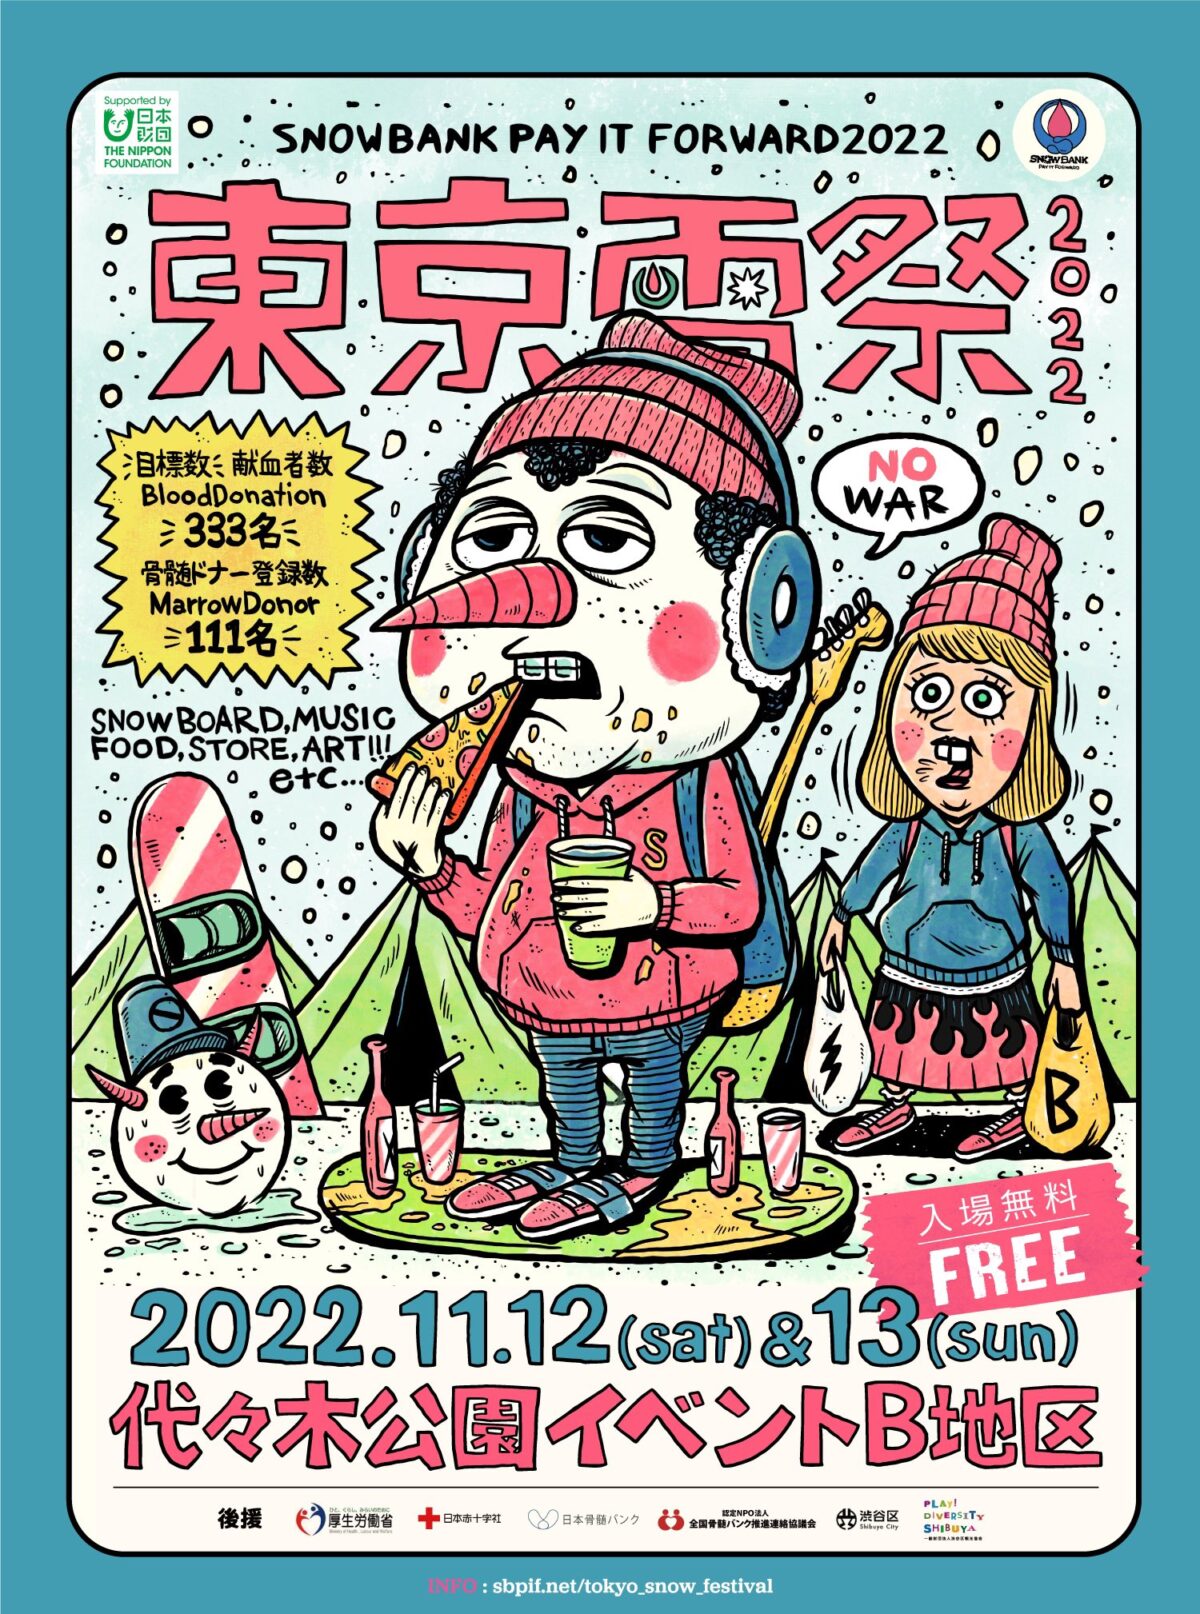 11月12（土）13（日）は代々木公園イベント広場で東京雪祭SNOWBANK PAY IT FORWARD 2022